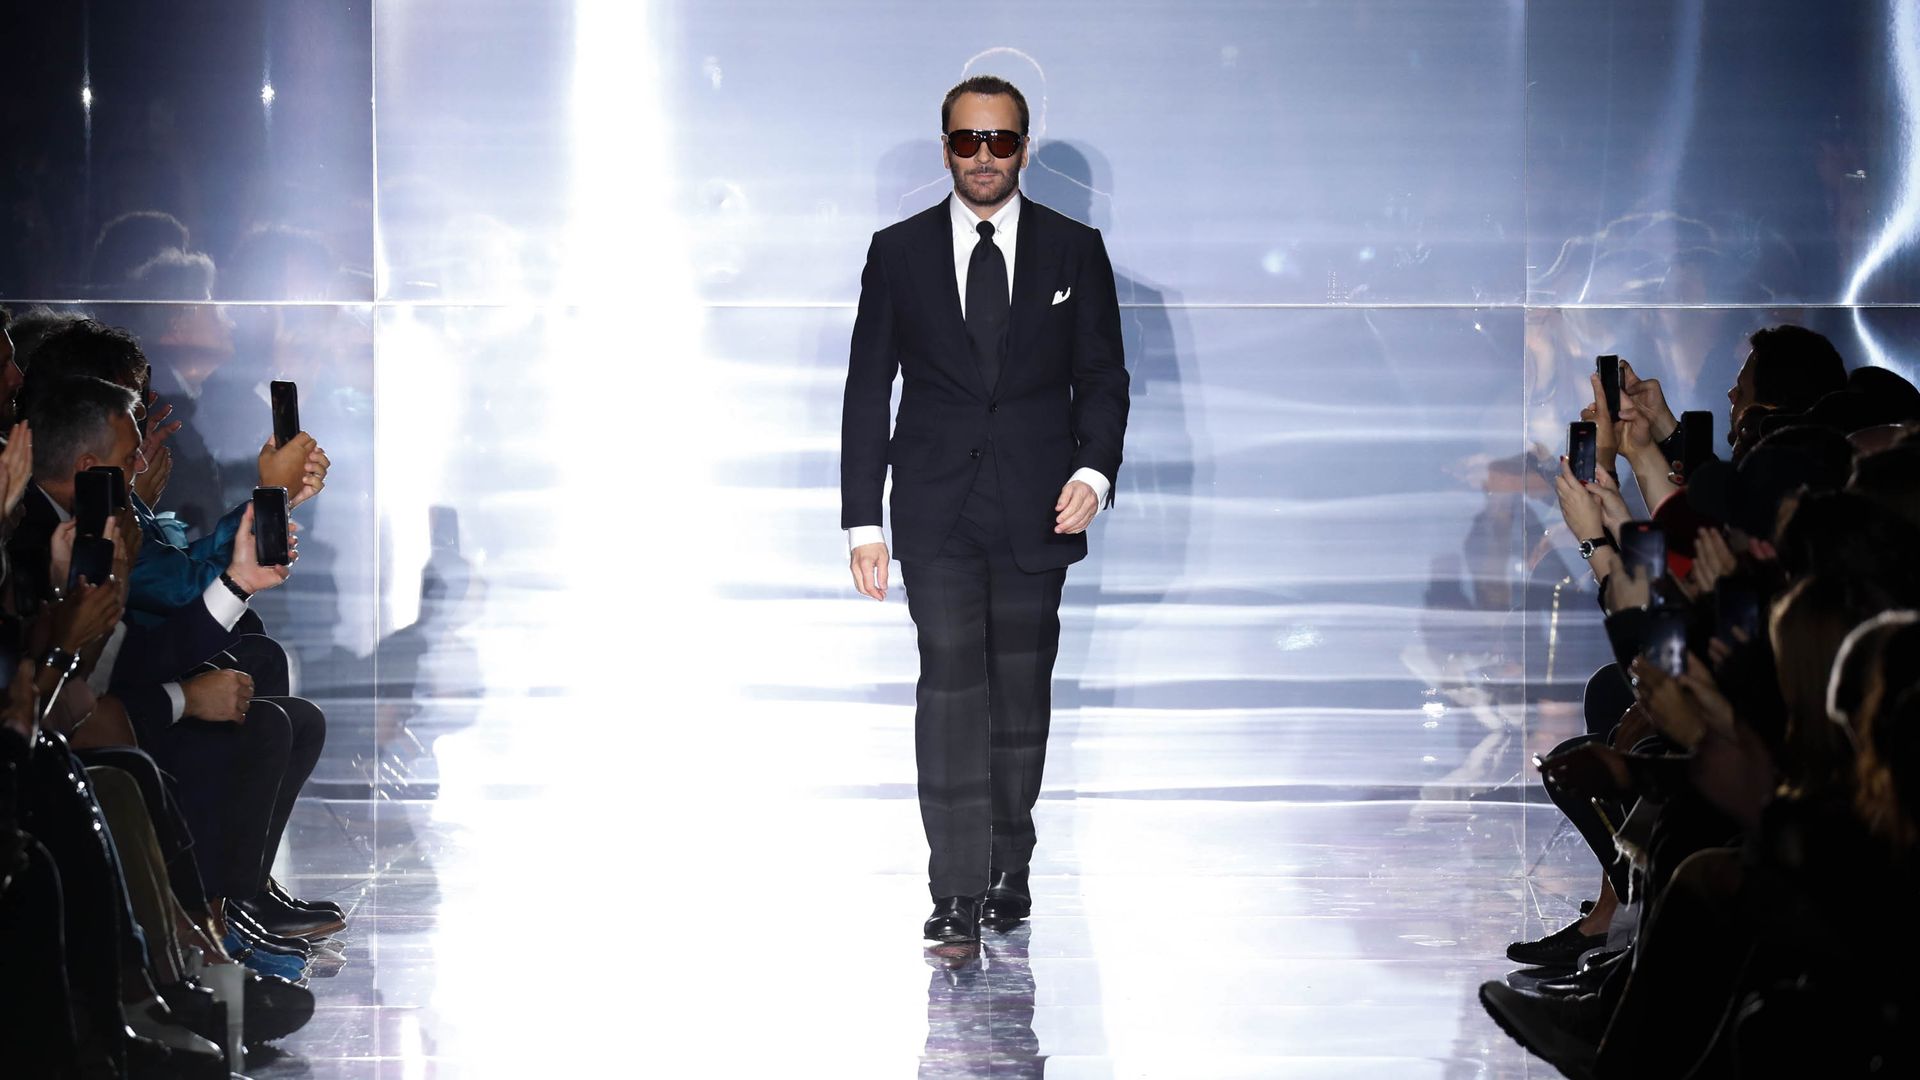 The fashion designer Tom Ford walks down a runway following a fashion show.